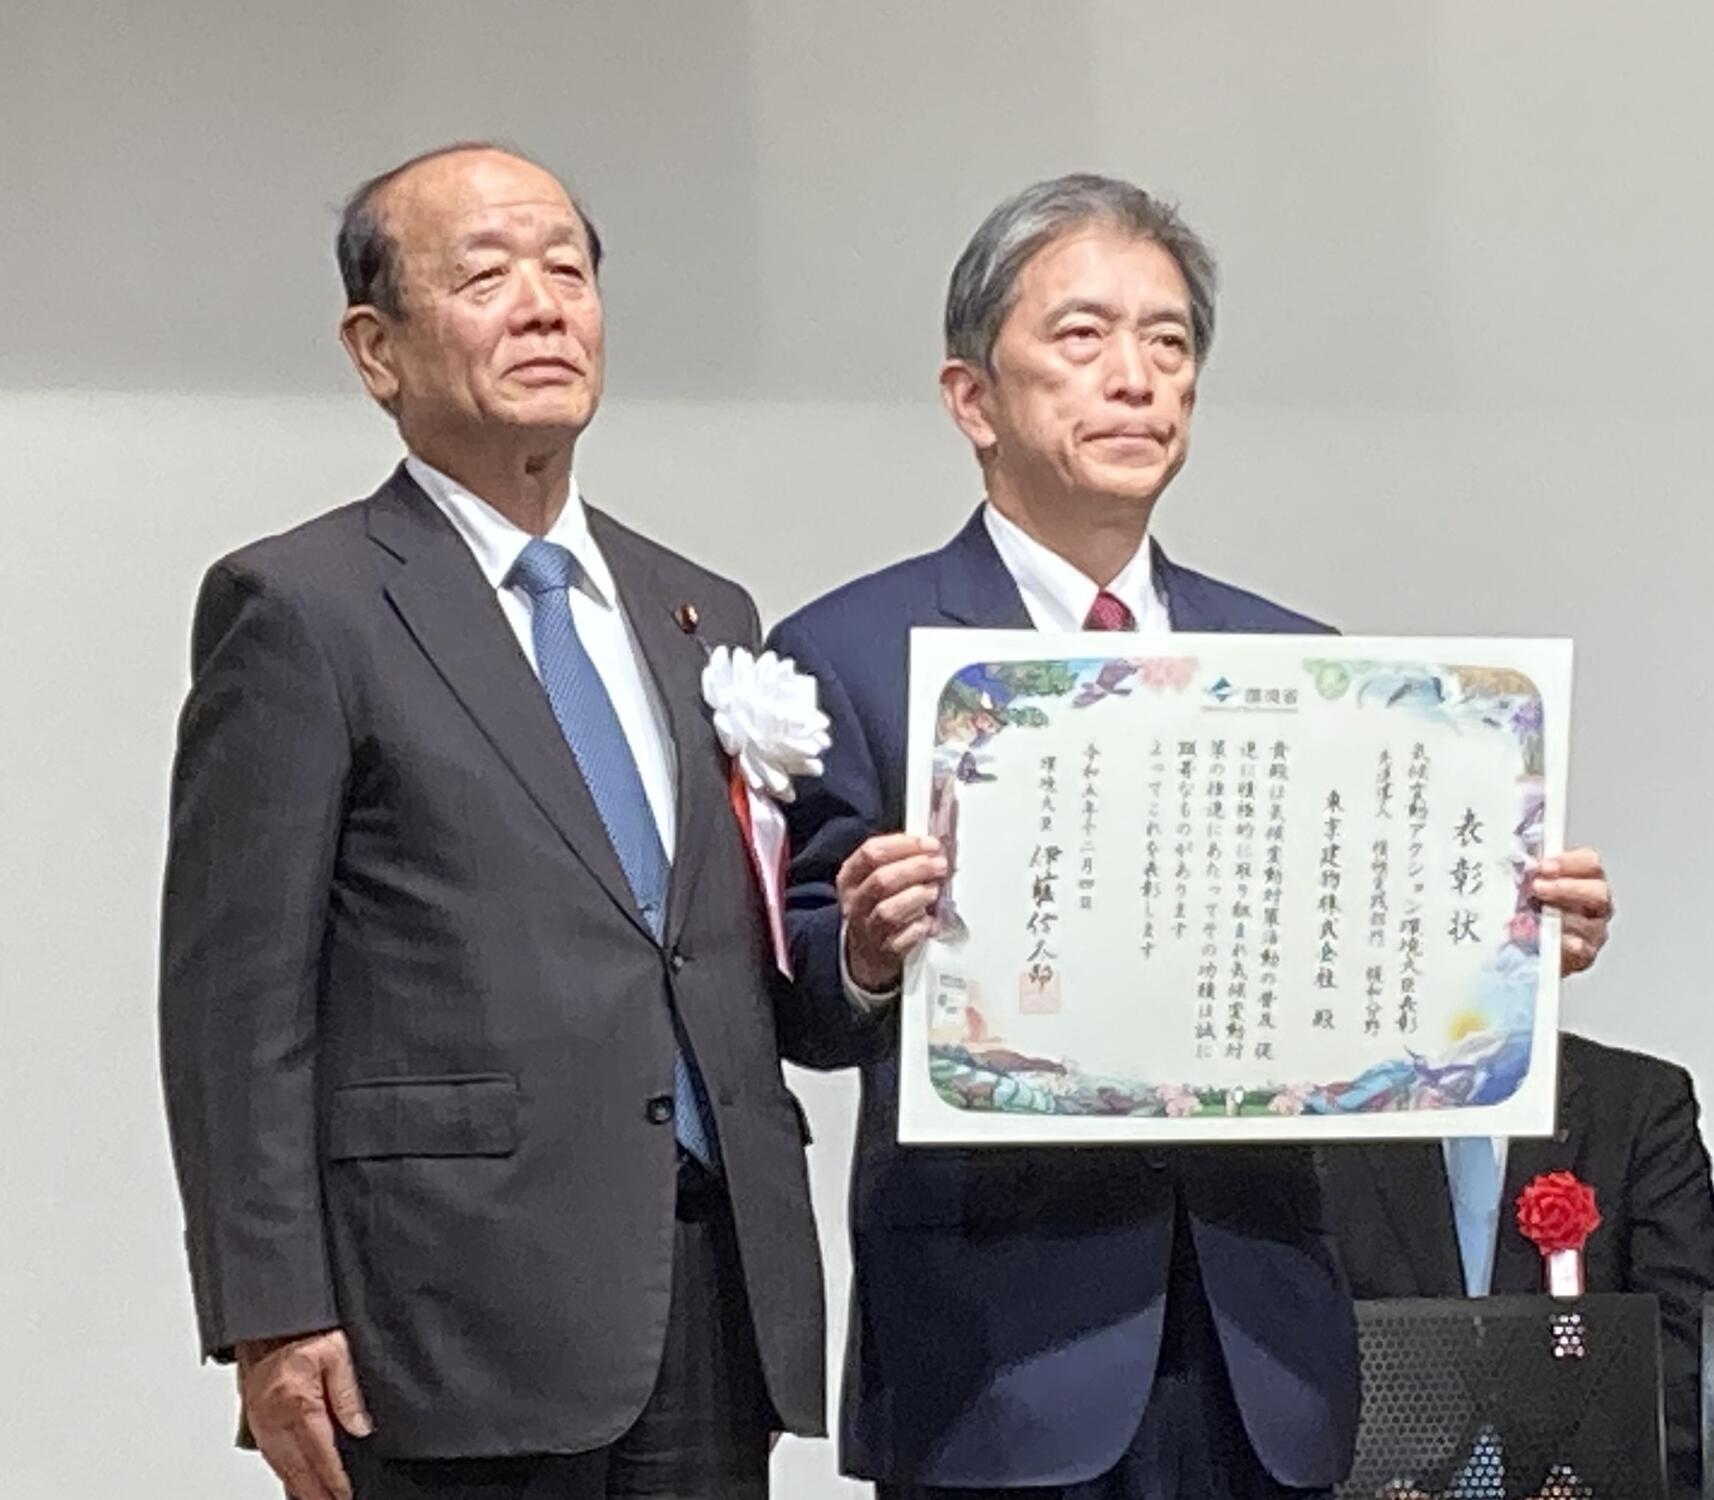 八木哲也環境副大臣（左）と 東京建物専務執行役員 加藤久喜（右）